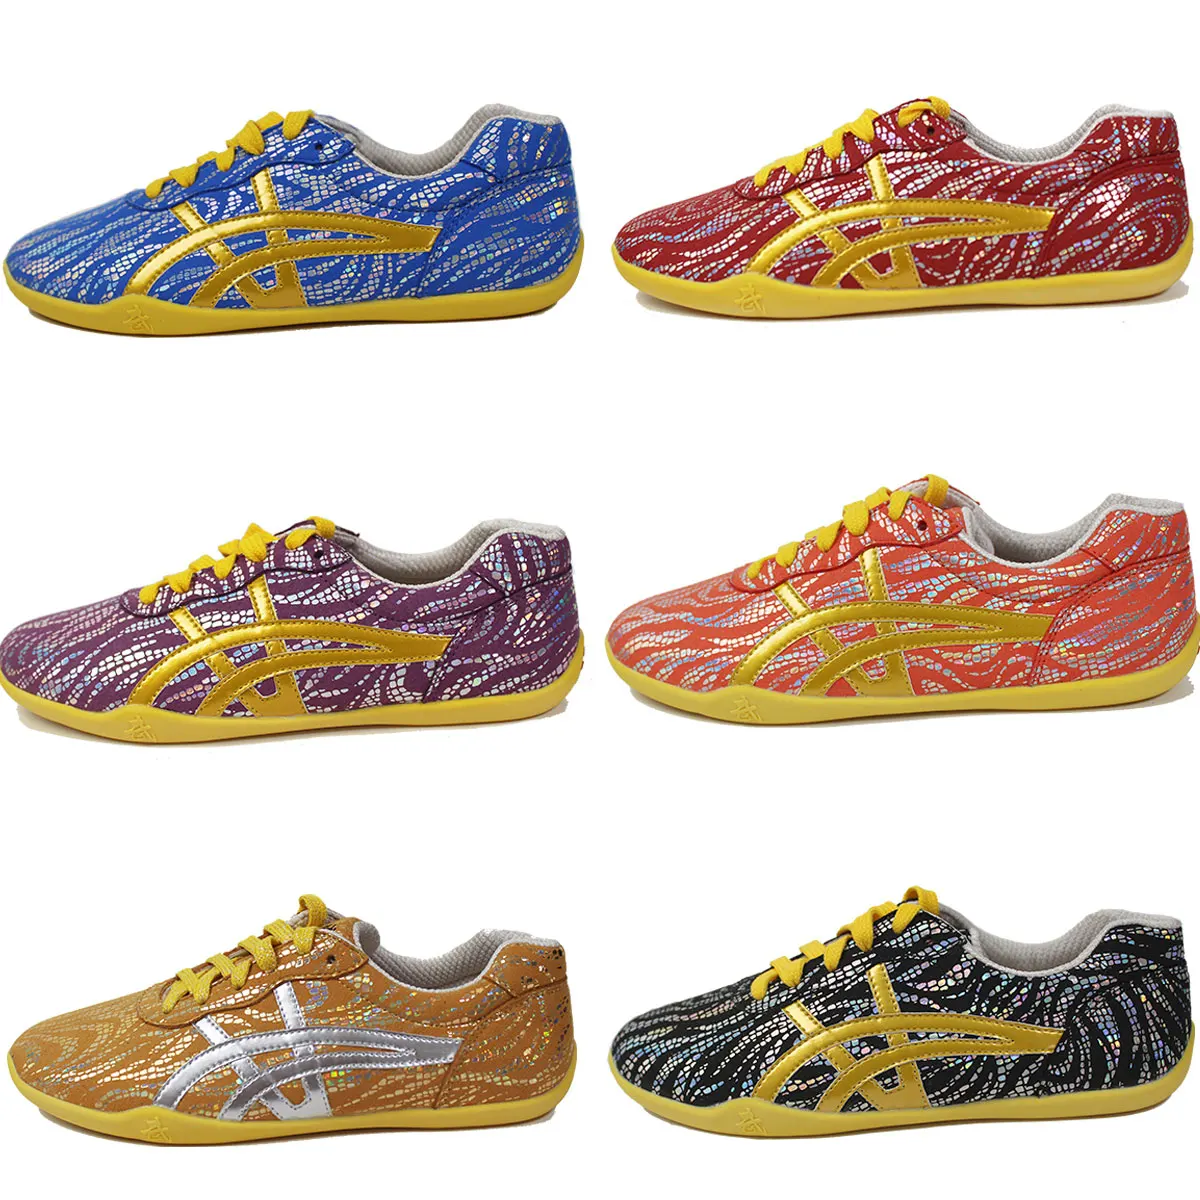 Обувь wushu, обувь taichi, спортивная обувь Wushu, детская обувь ccwushu kungfu, китайские боевые искусства, обувь